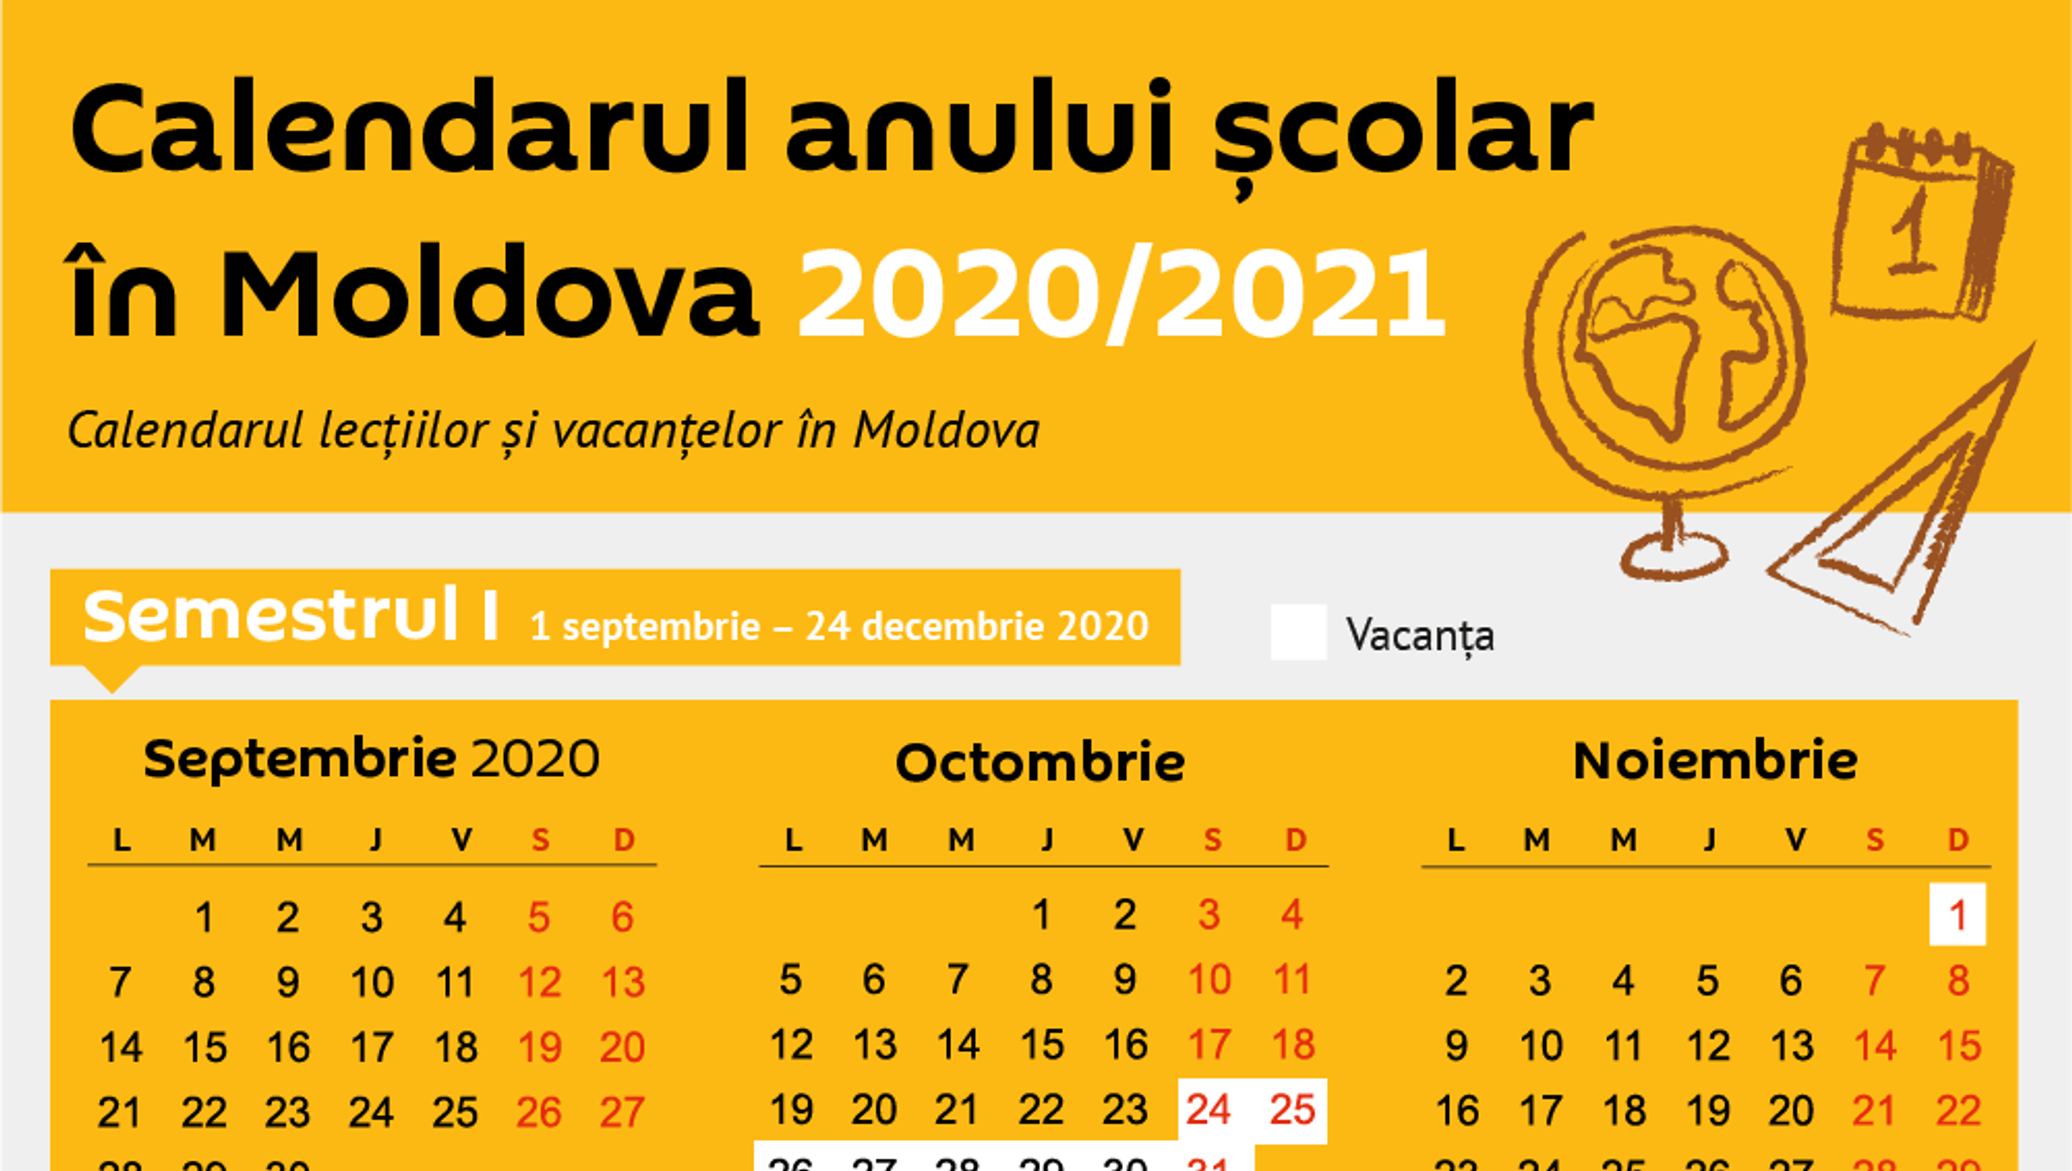 Евролига 2023 2024 расписание. Calendarul 2021. Anul 2021. Calendar 2021 MD. Молдавский календарь.